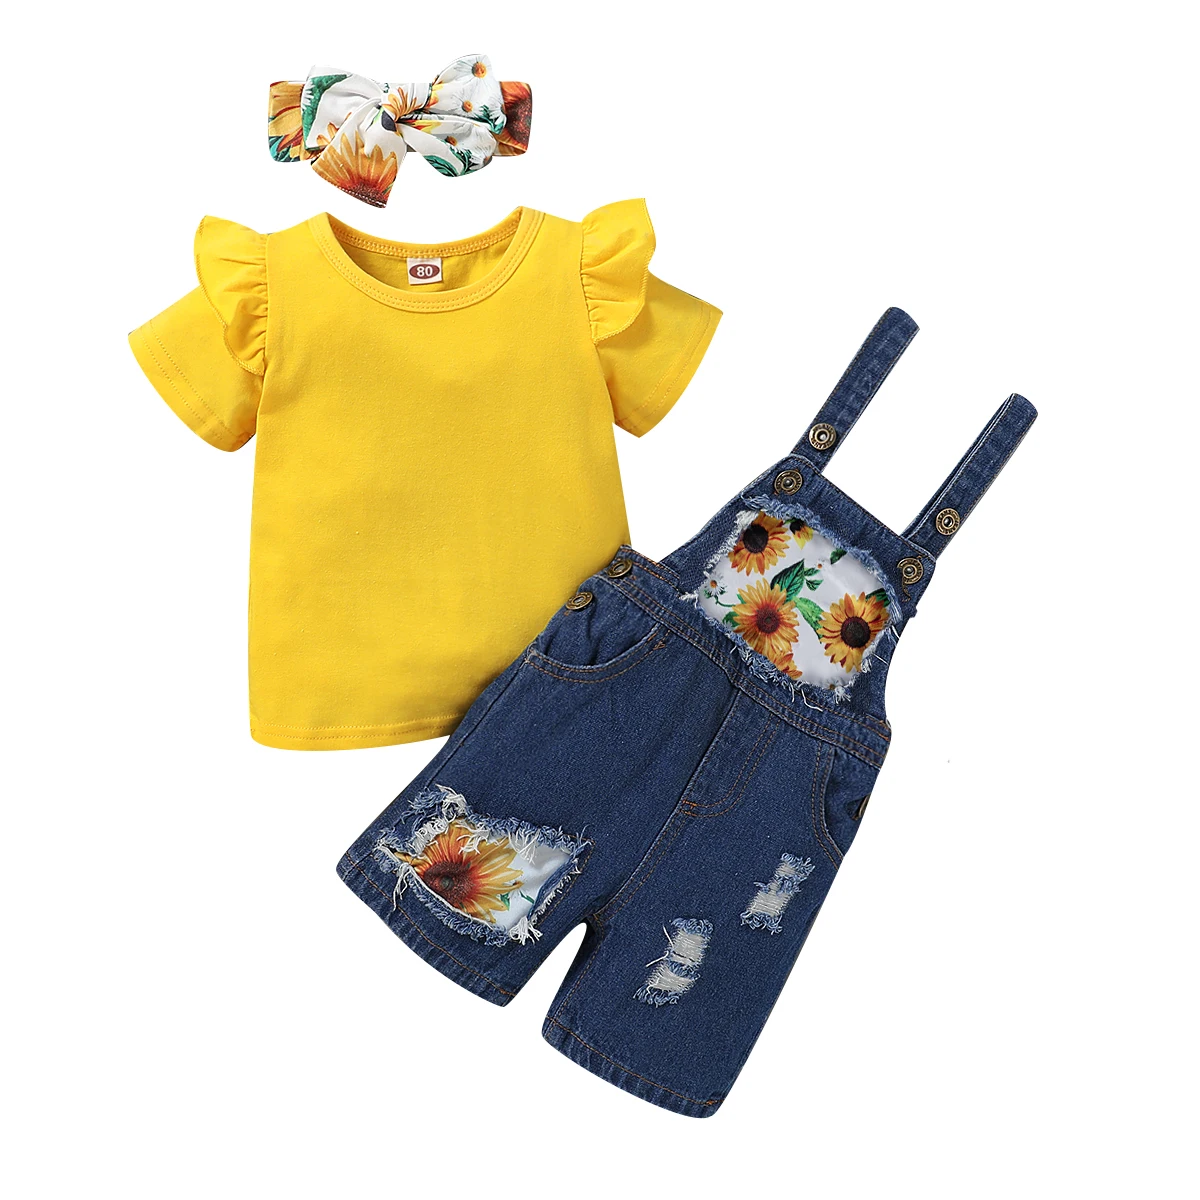 Комплект из 3 предметов для детей ясельного возраста комплекты одежды малышей